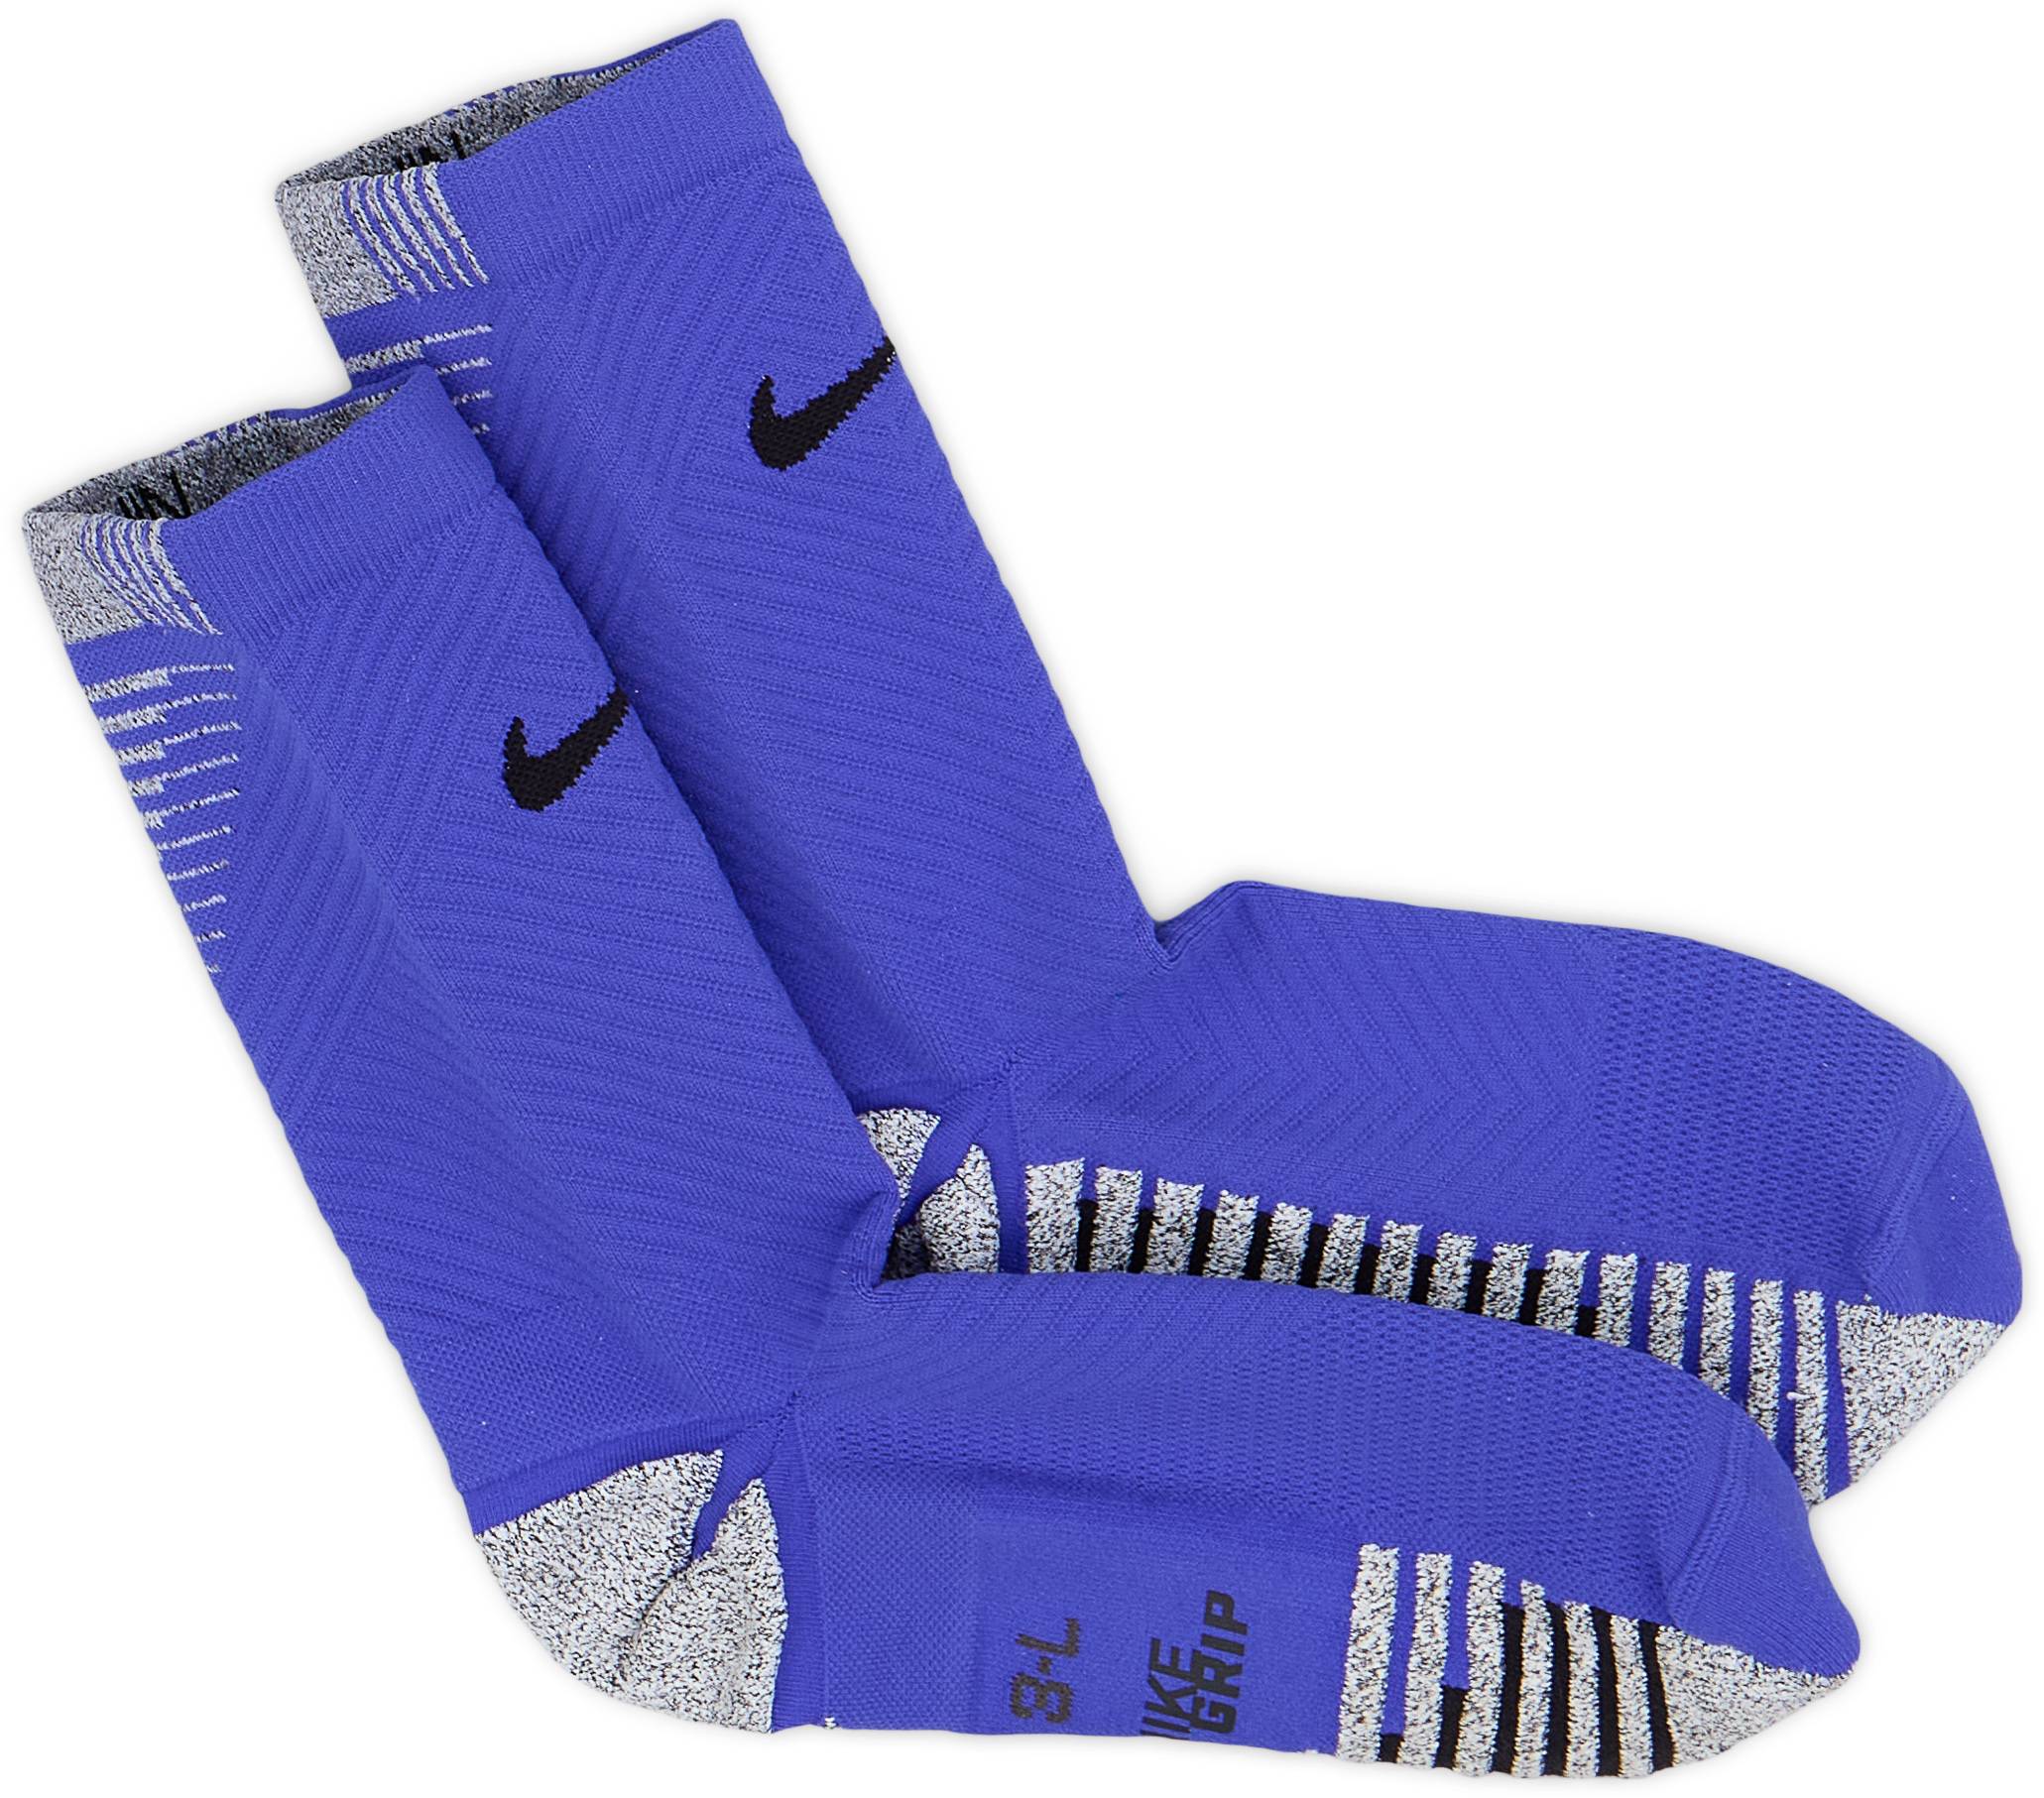 2017-18 Nike Stripe Crew Socks